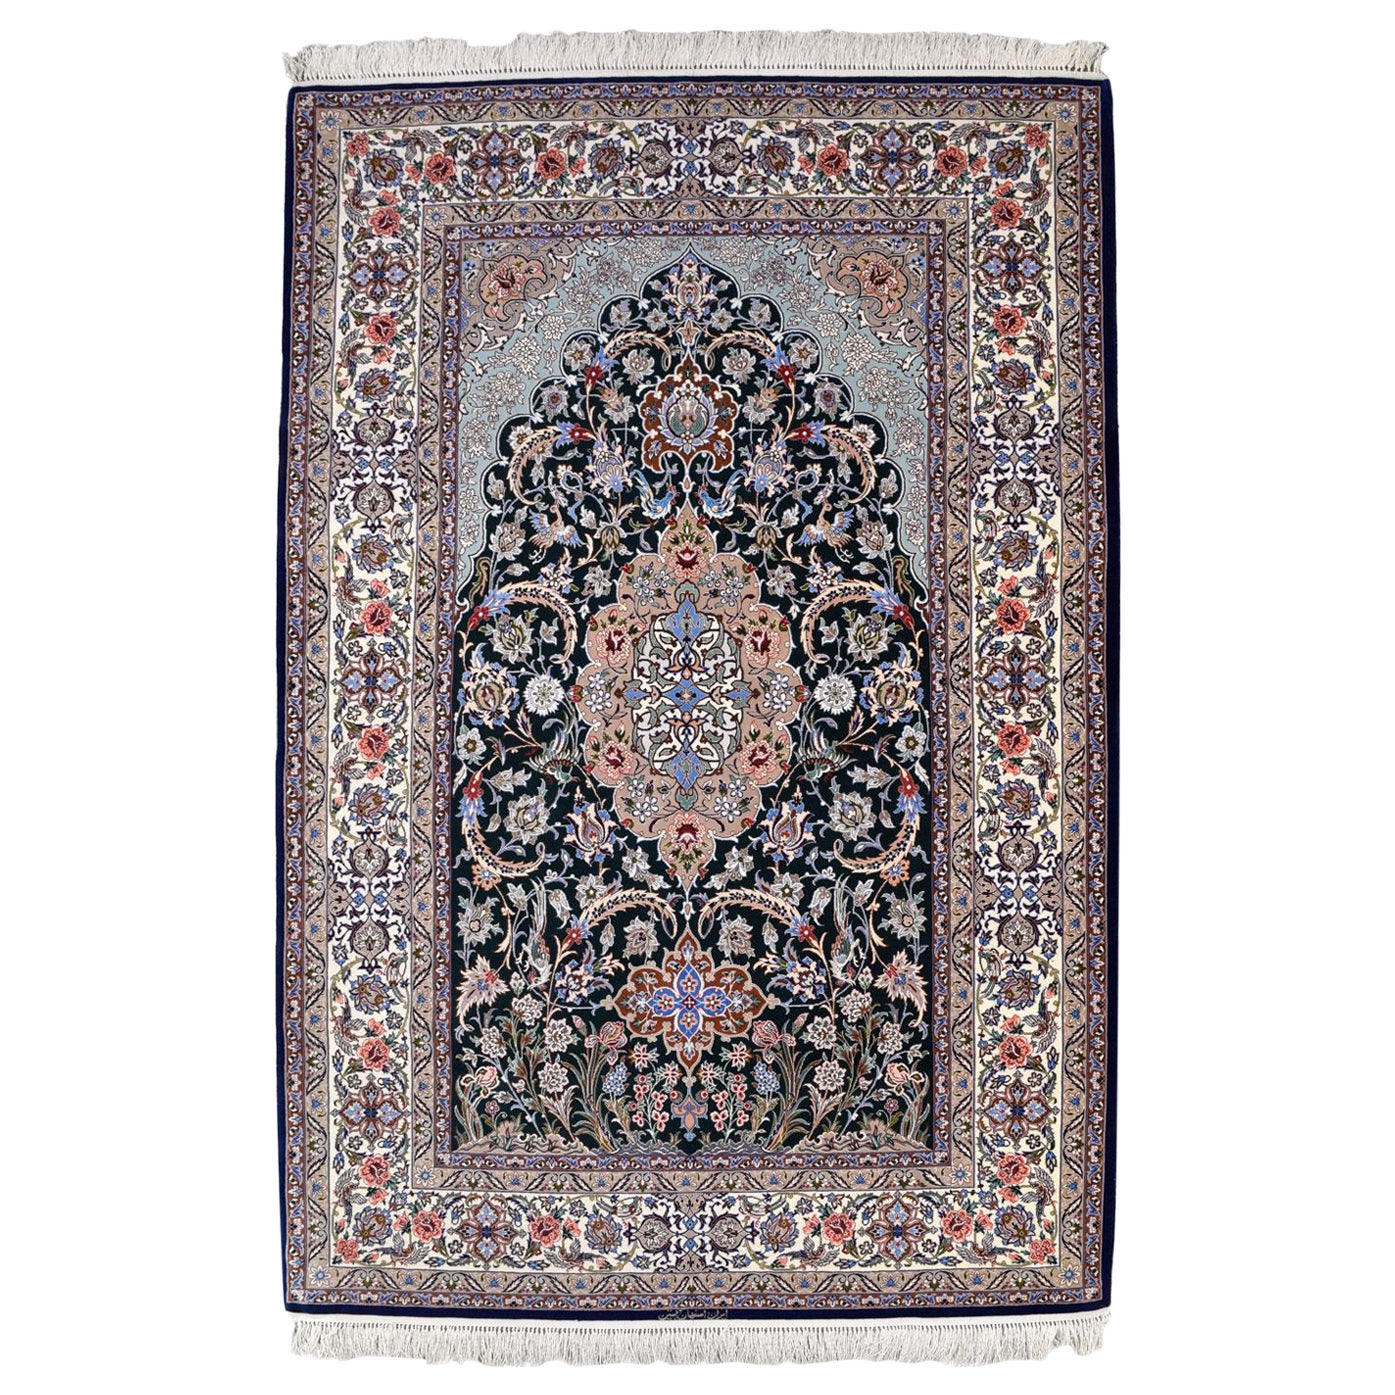 Isfahan Persischer Teppich aus Wolle und Seide in Blau, Creme und Rot, 5' x 7'